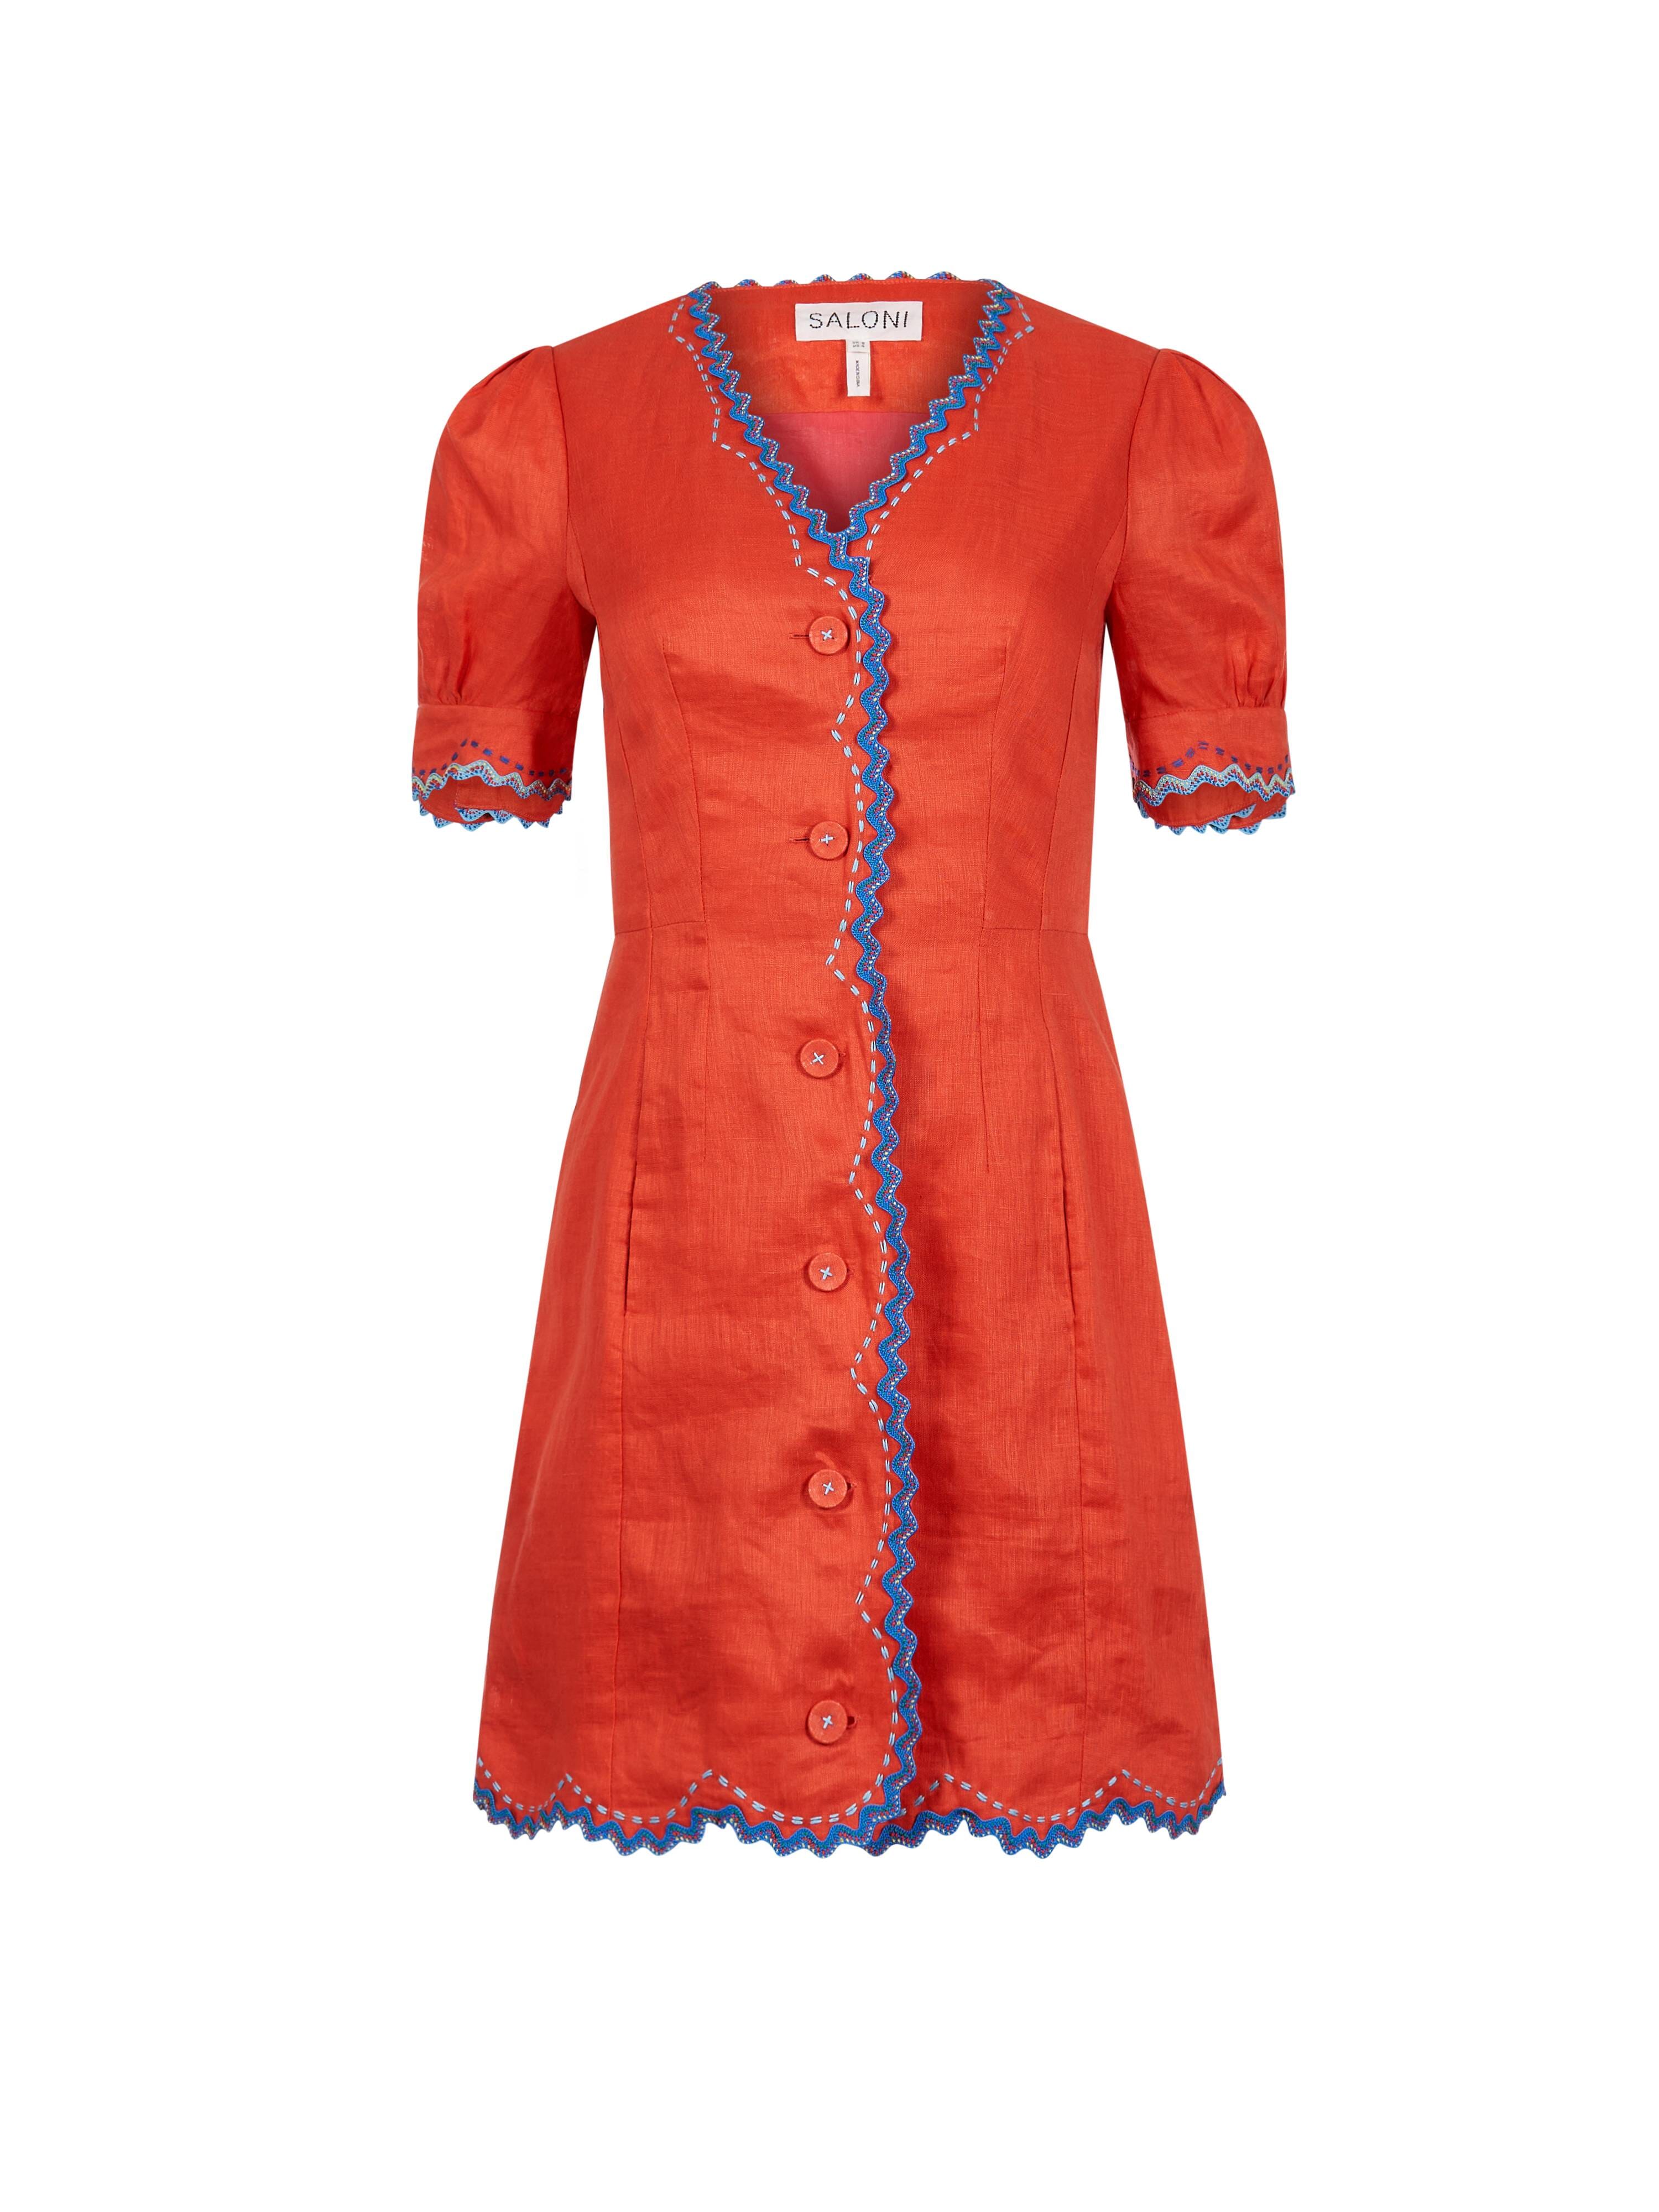 Maje Blue Rallex Denim Dress Sized S | eBay